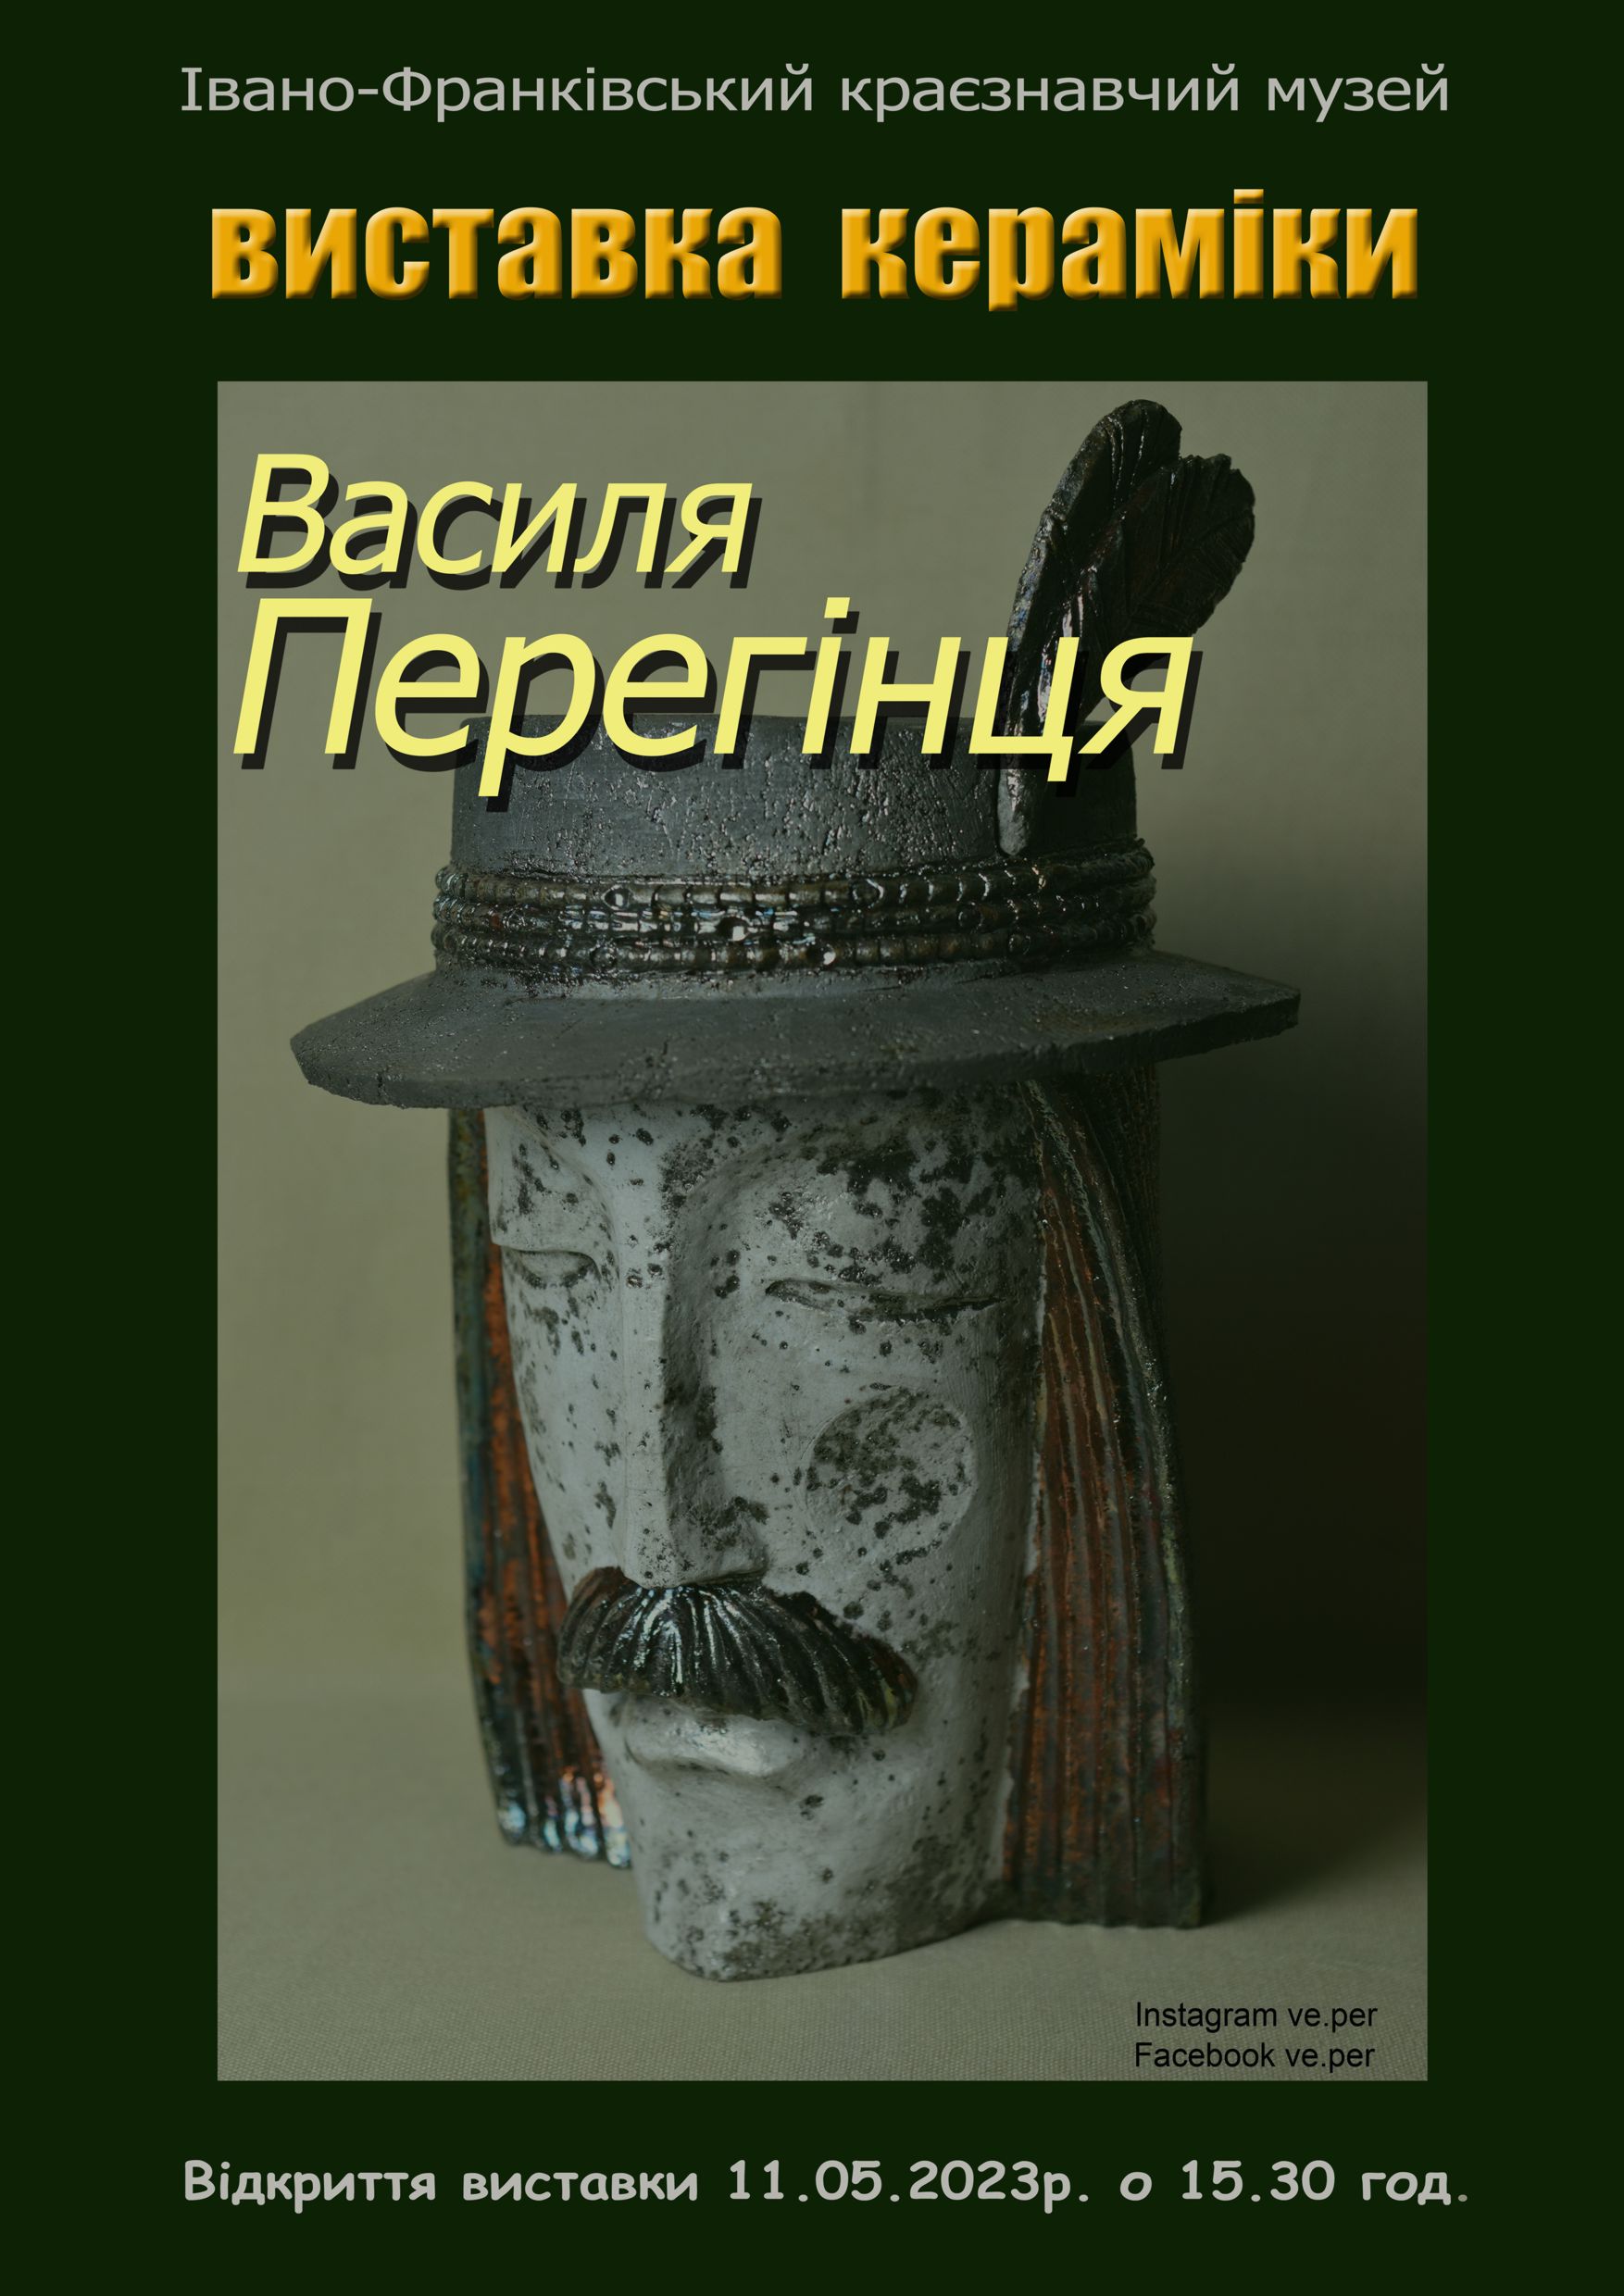 Vystavka Keramiky Vasylja Peregintsja